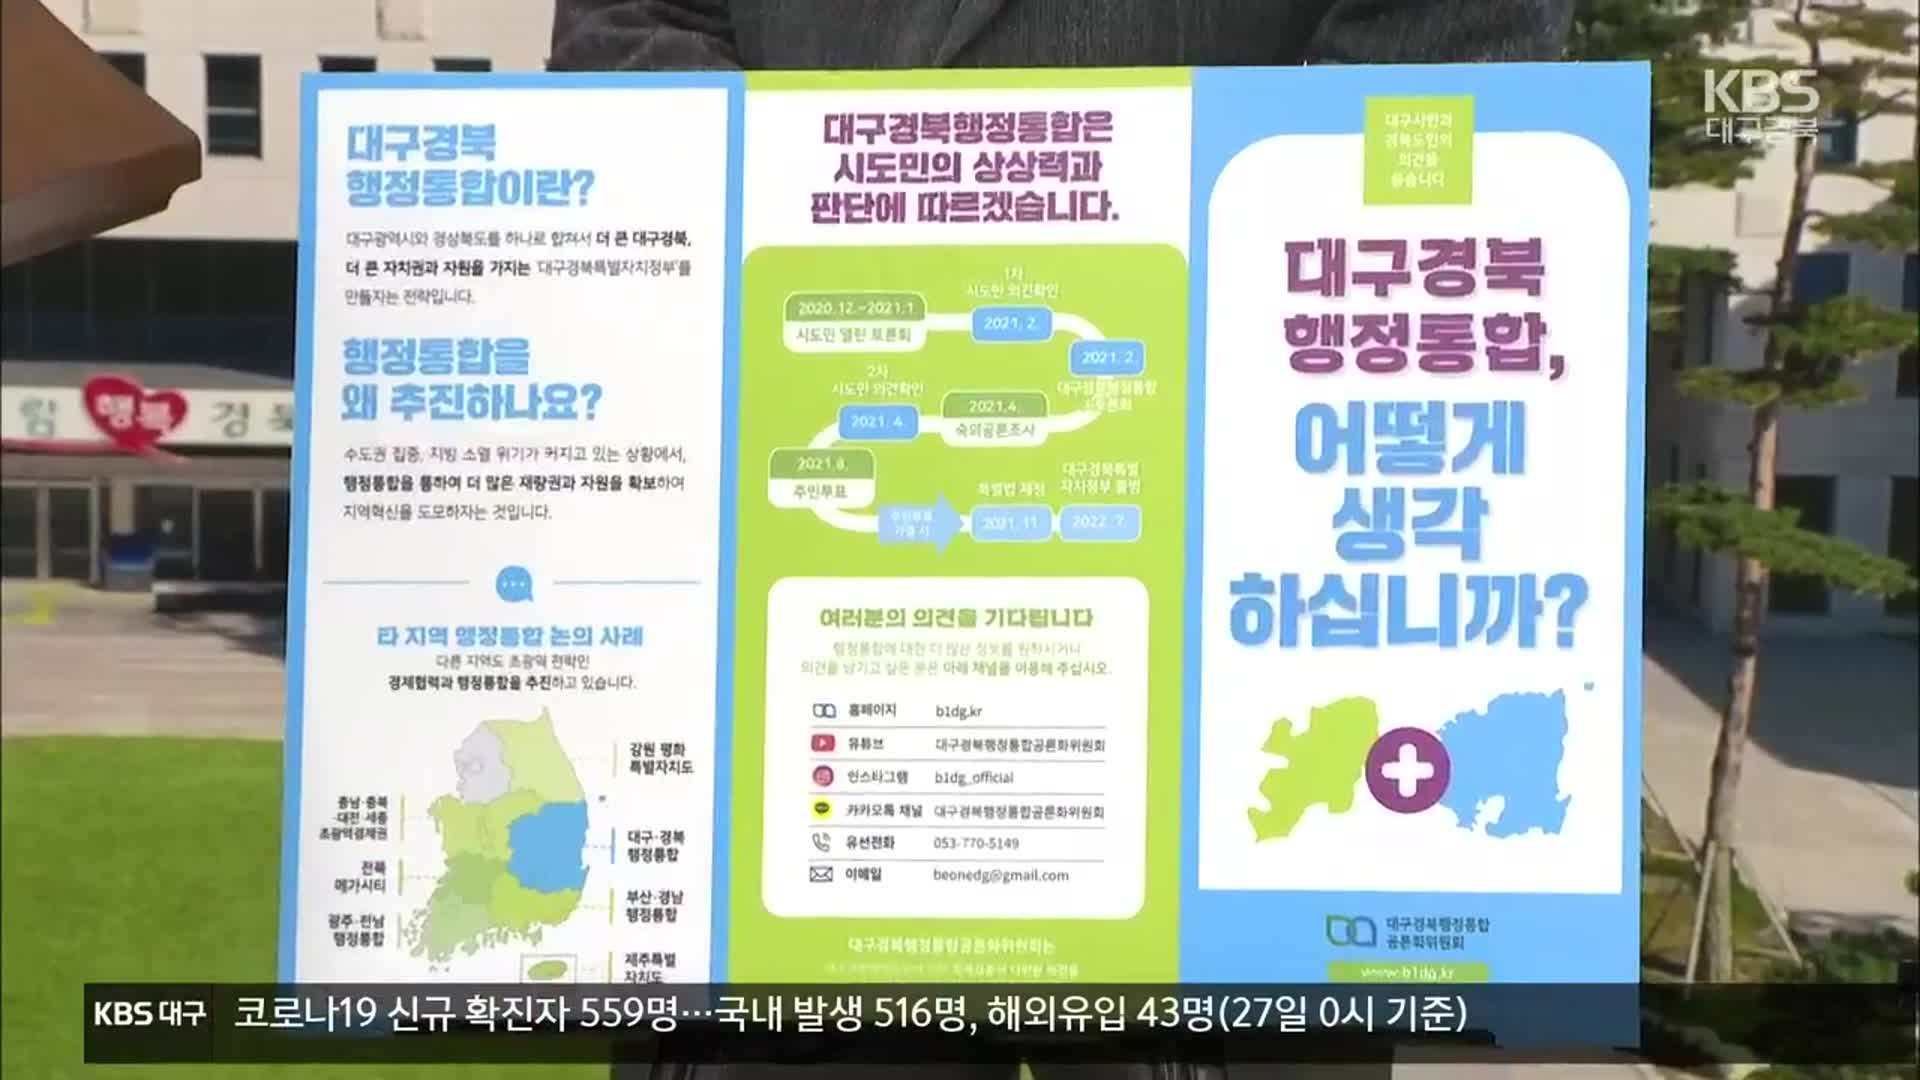 대구·경북 행정통합 공론화 부족, 일정 연기